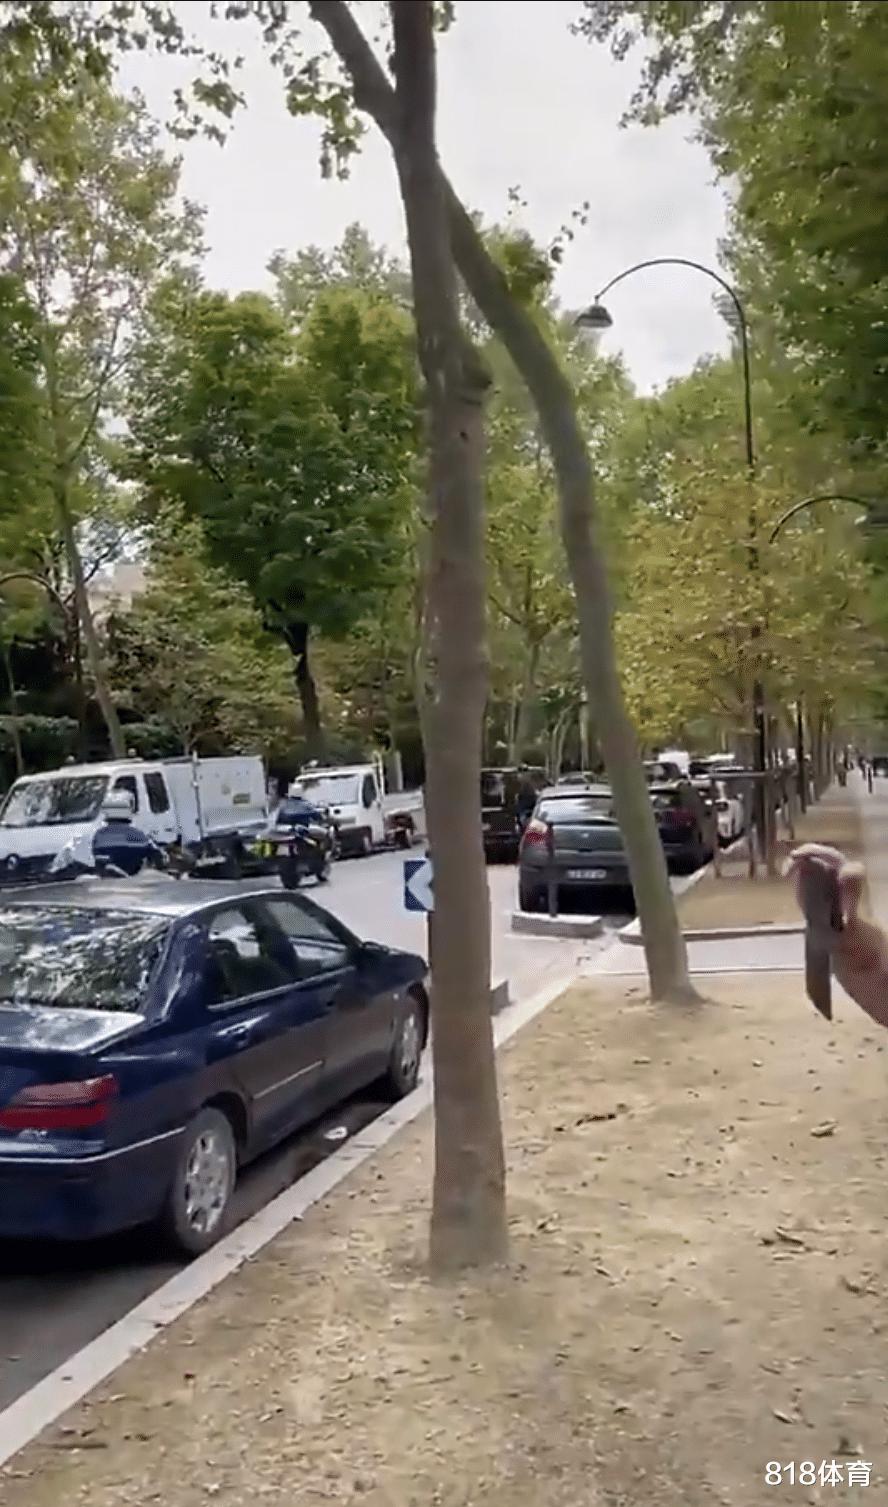 总统待遇! 梅西抵达巴黎体检, 3辆警车开道3辆殿后, 上百防暴警察封路(4)